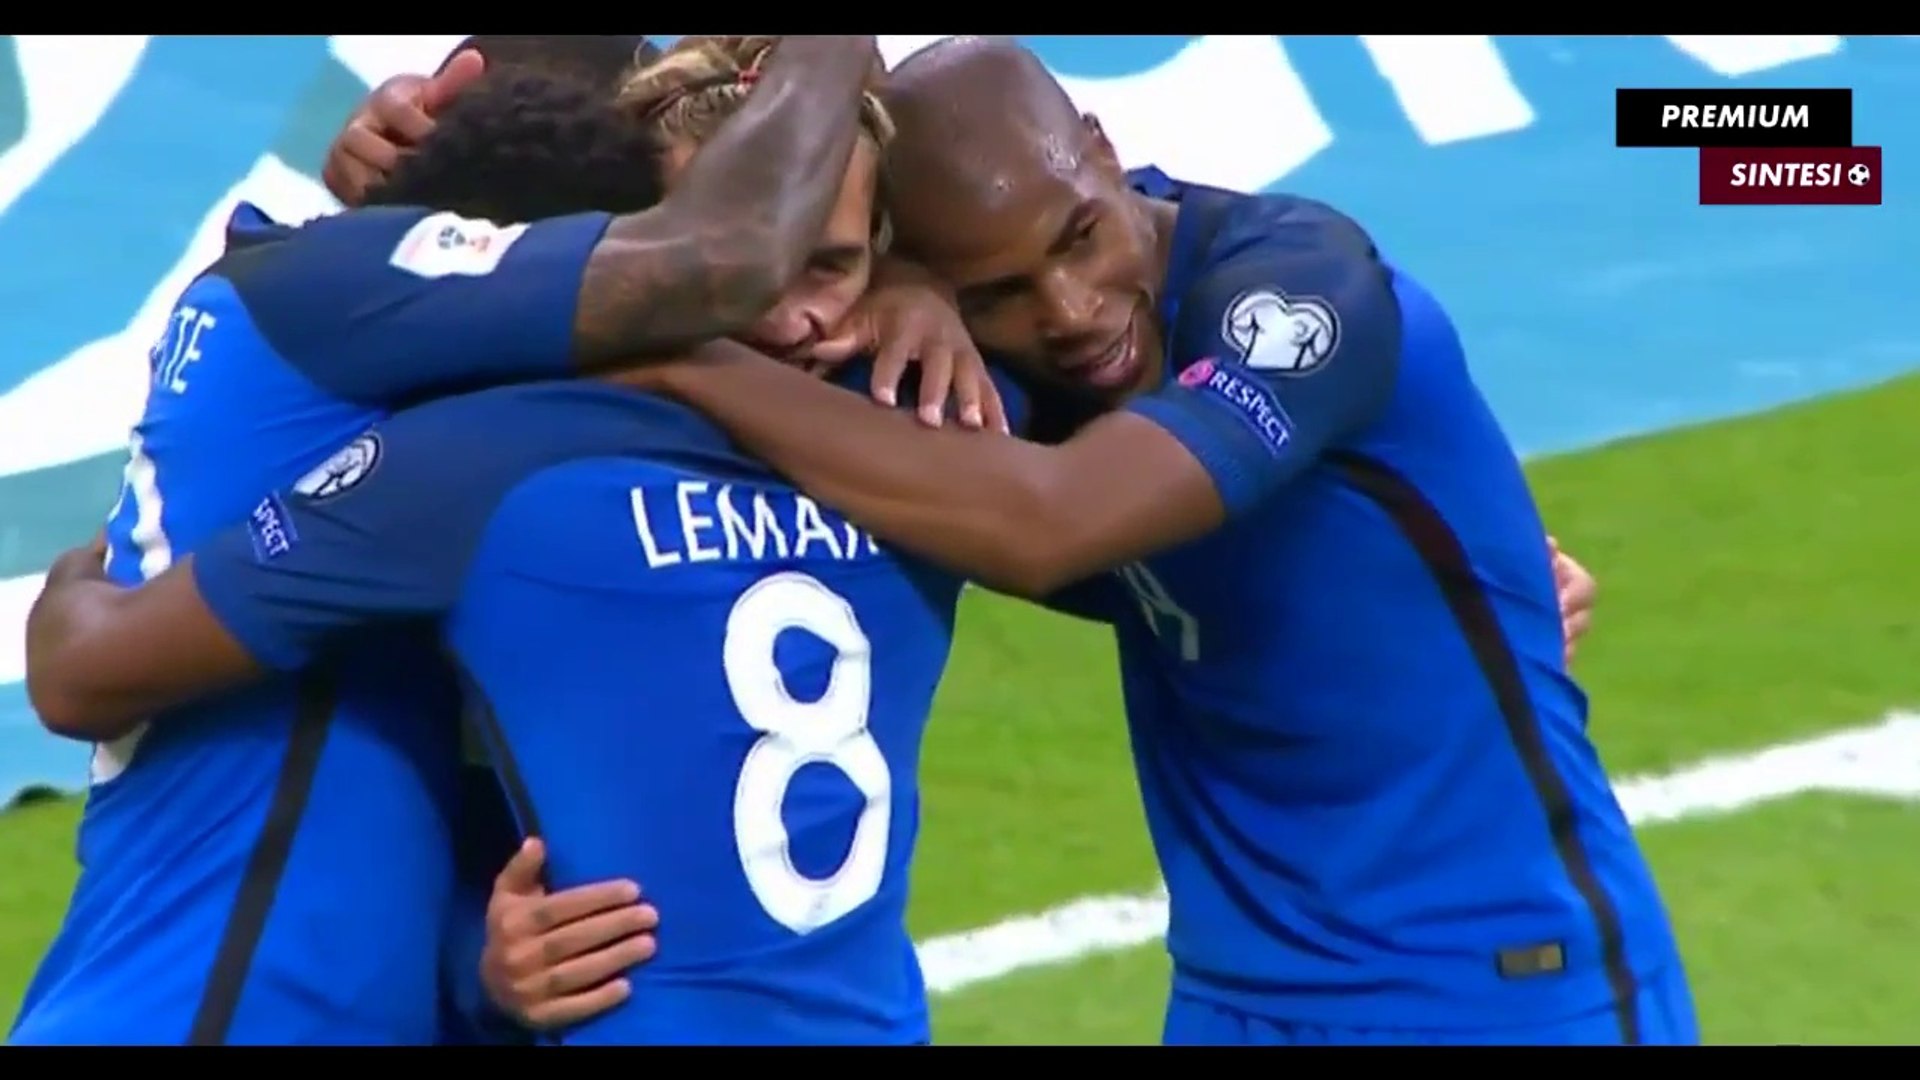 France 4-0 Pays-Bas - Les Buts et Résumé - 31.08.2017 ᴴᴰ - Vidéo Dailymotion